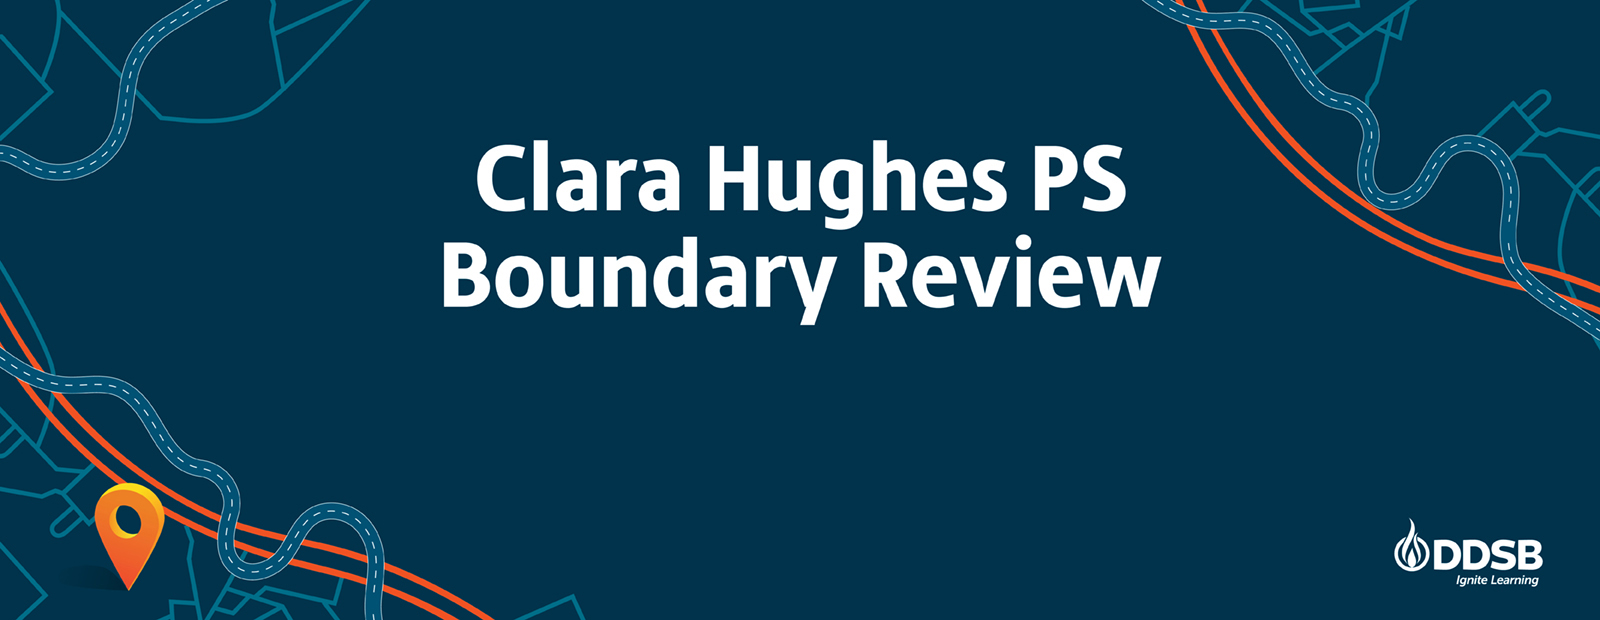 Clara Hughes PS Boundary Review